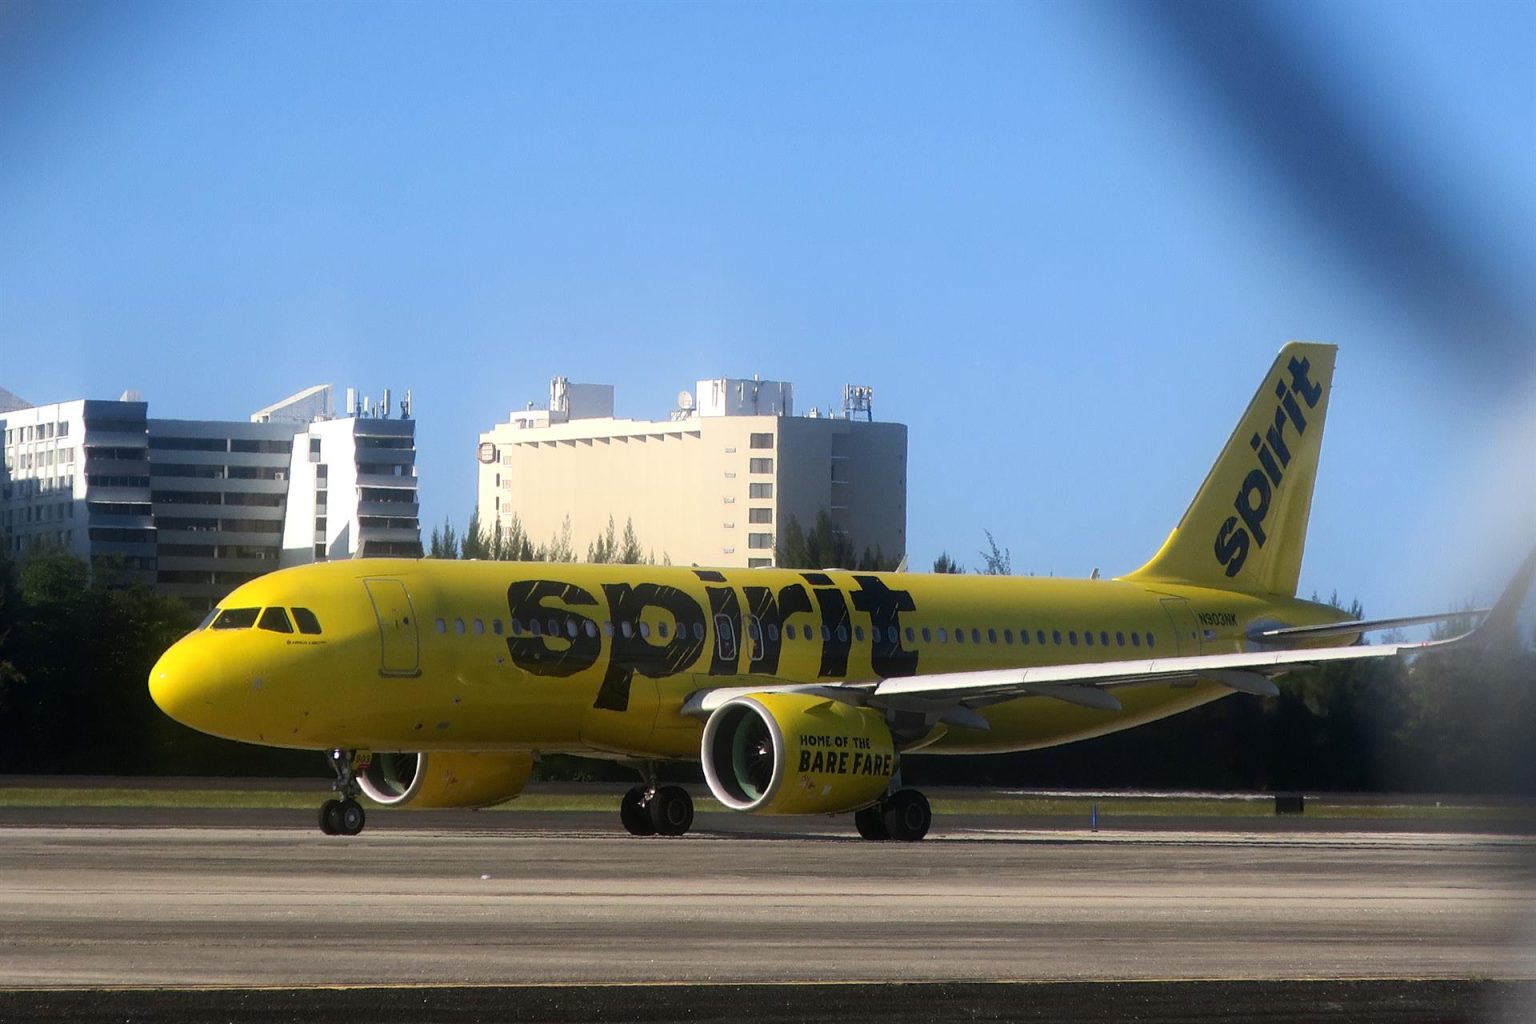 Imagen de archivo que muestra un avión de la aerolínea Spirit. EFE/Jorge Muñiz